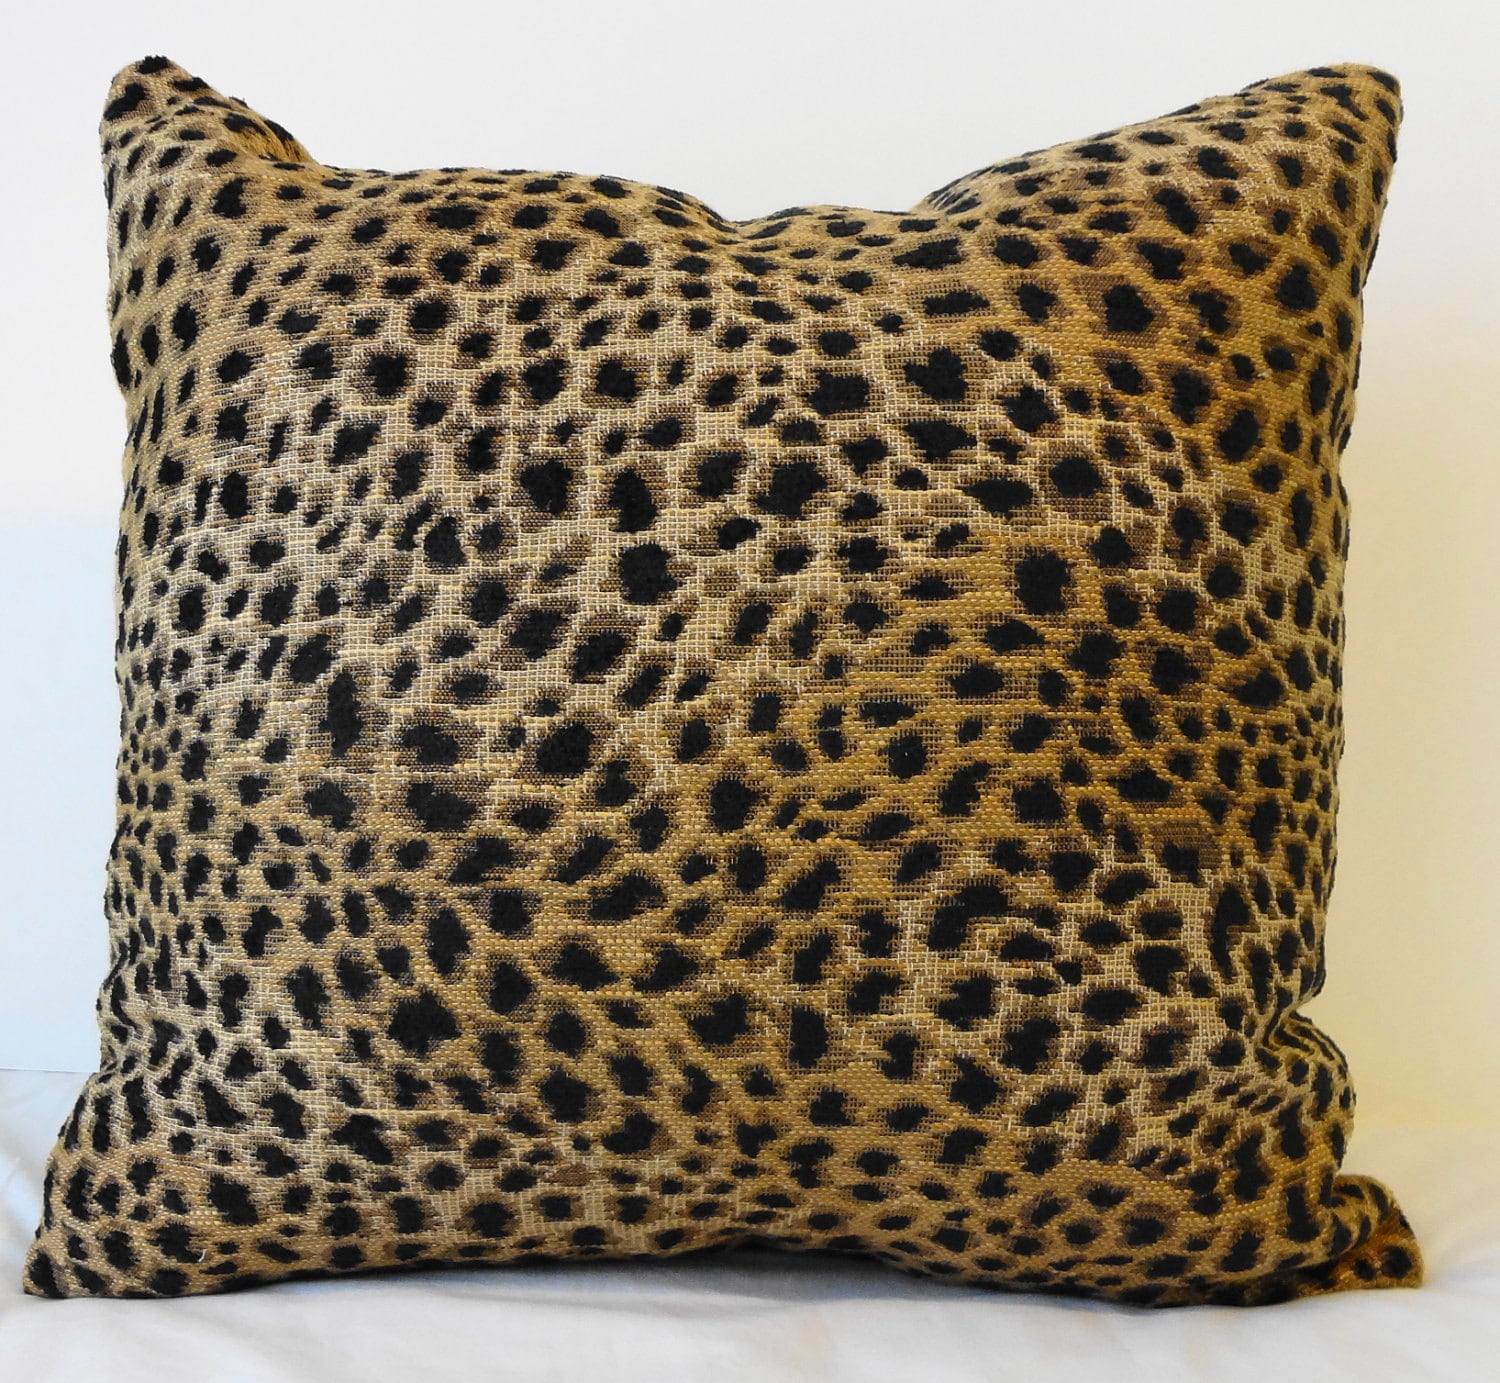 Leopard Print Decorative Pillow Cover Cheetah by pillows4fun